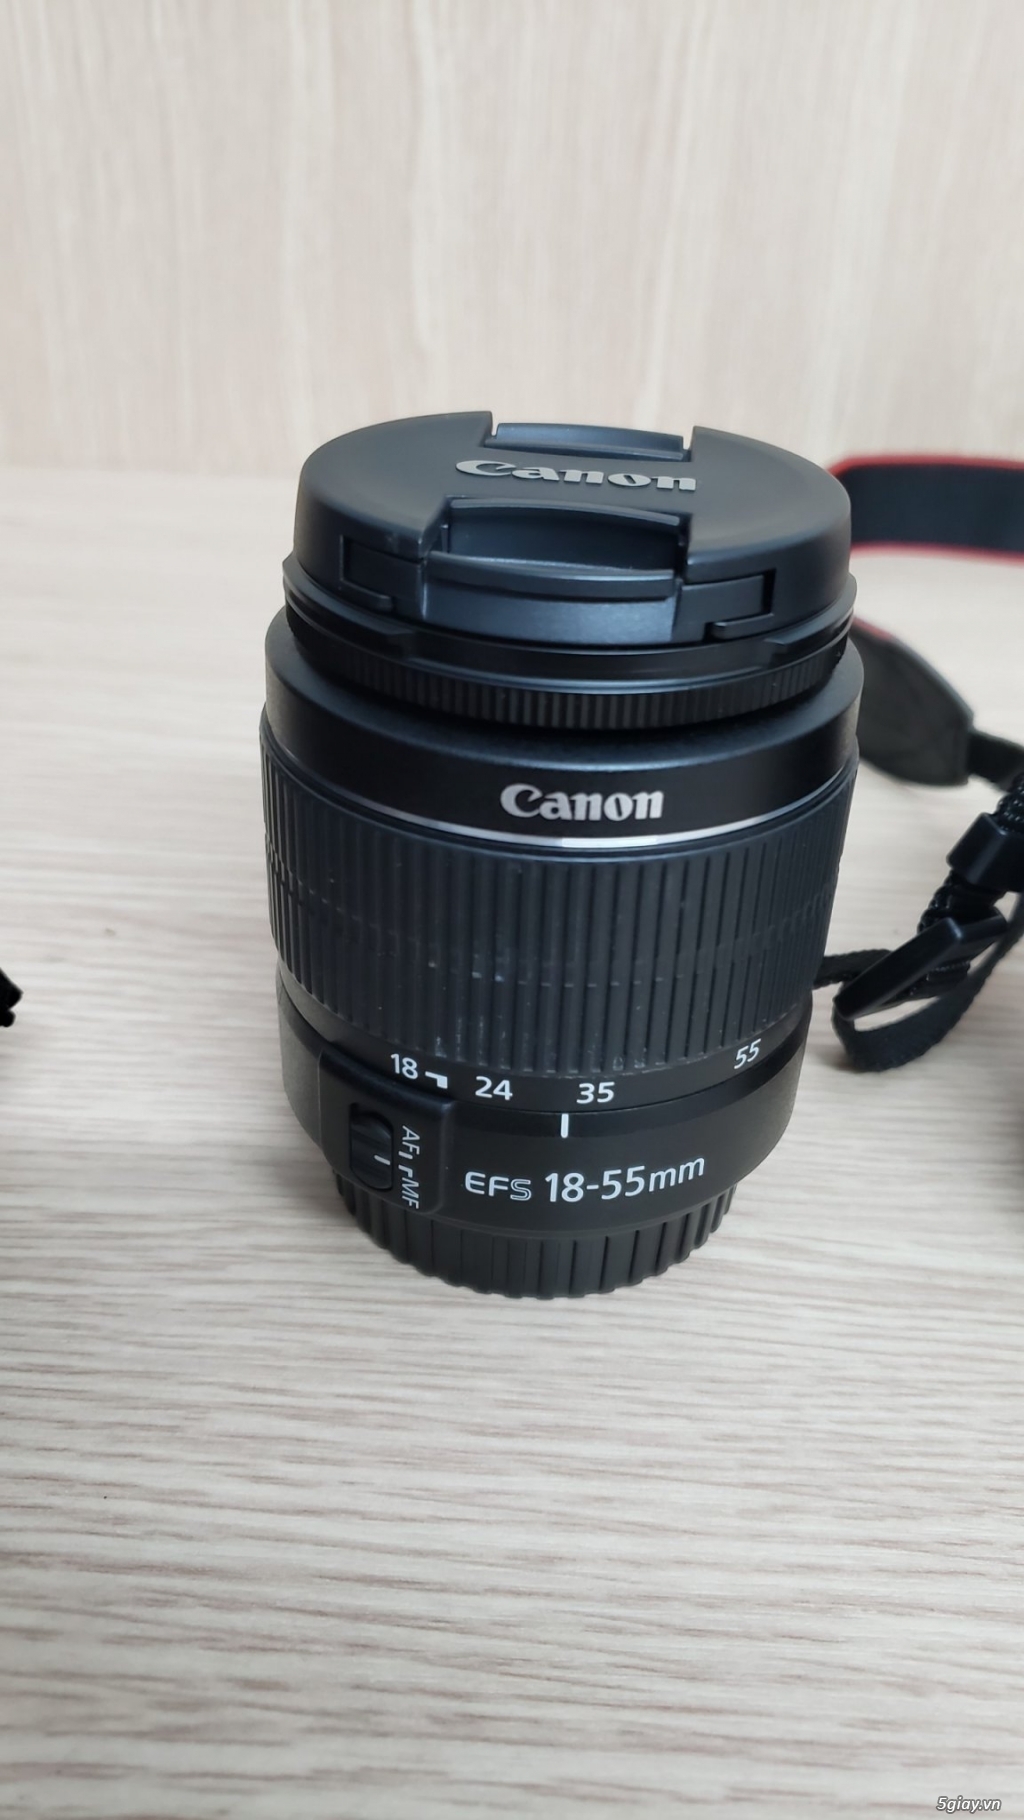 Hiện mình cần bán 1 Máy Ảnh Canon EOS 3000D Kit 18-55mm Full (Đen) - 2